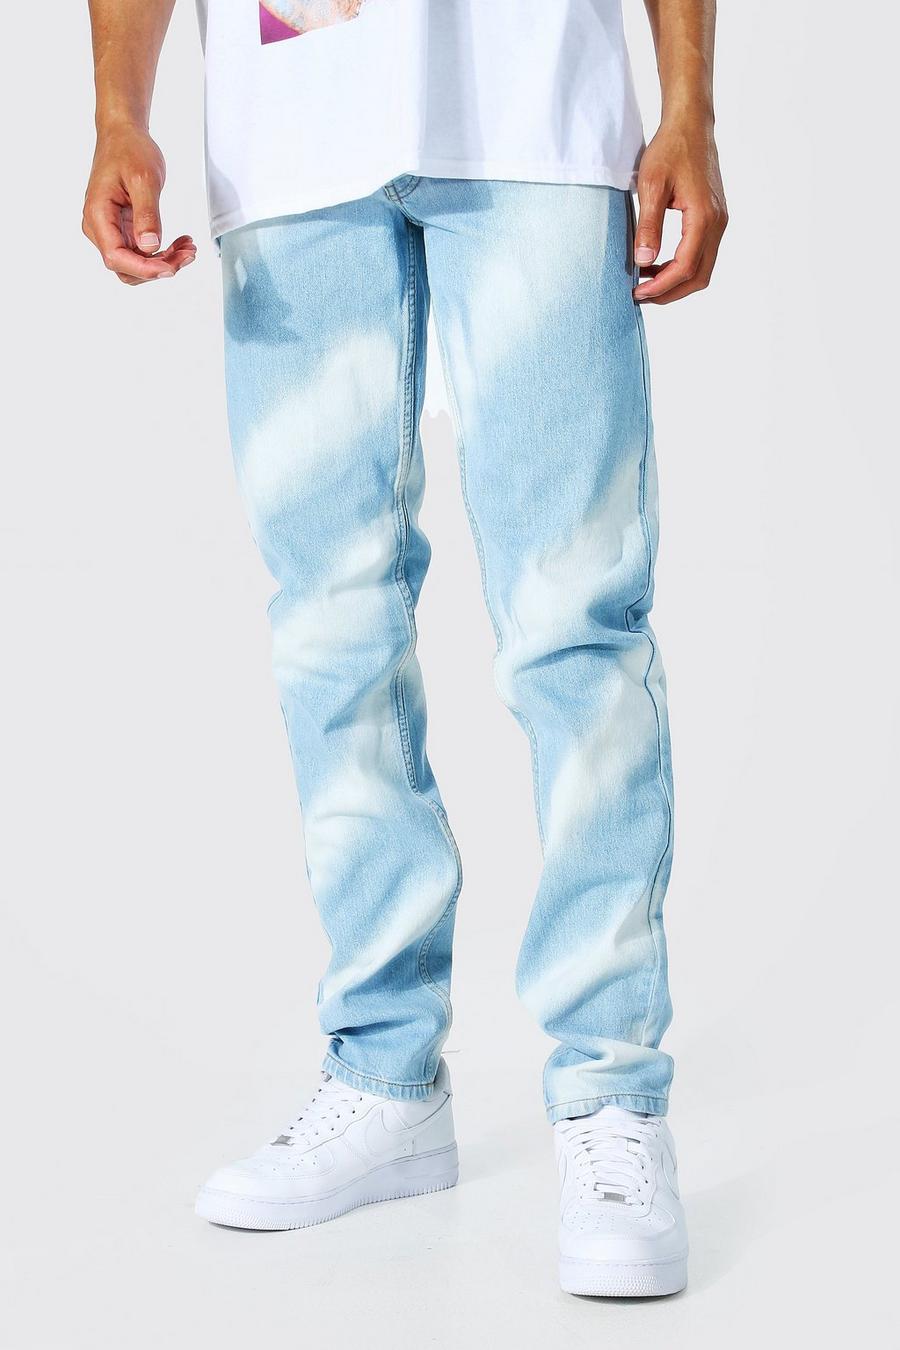 כחול קרח ג'ינס מבד קשיח בגזרה משוחררת עם כתמי הלבנה לגברים גבוהים image number 1